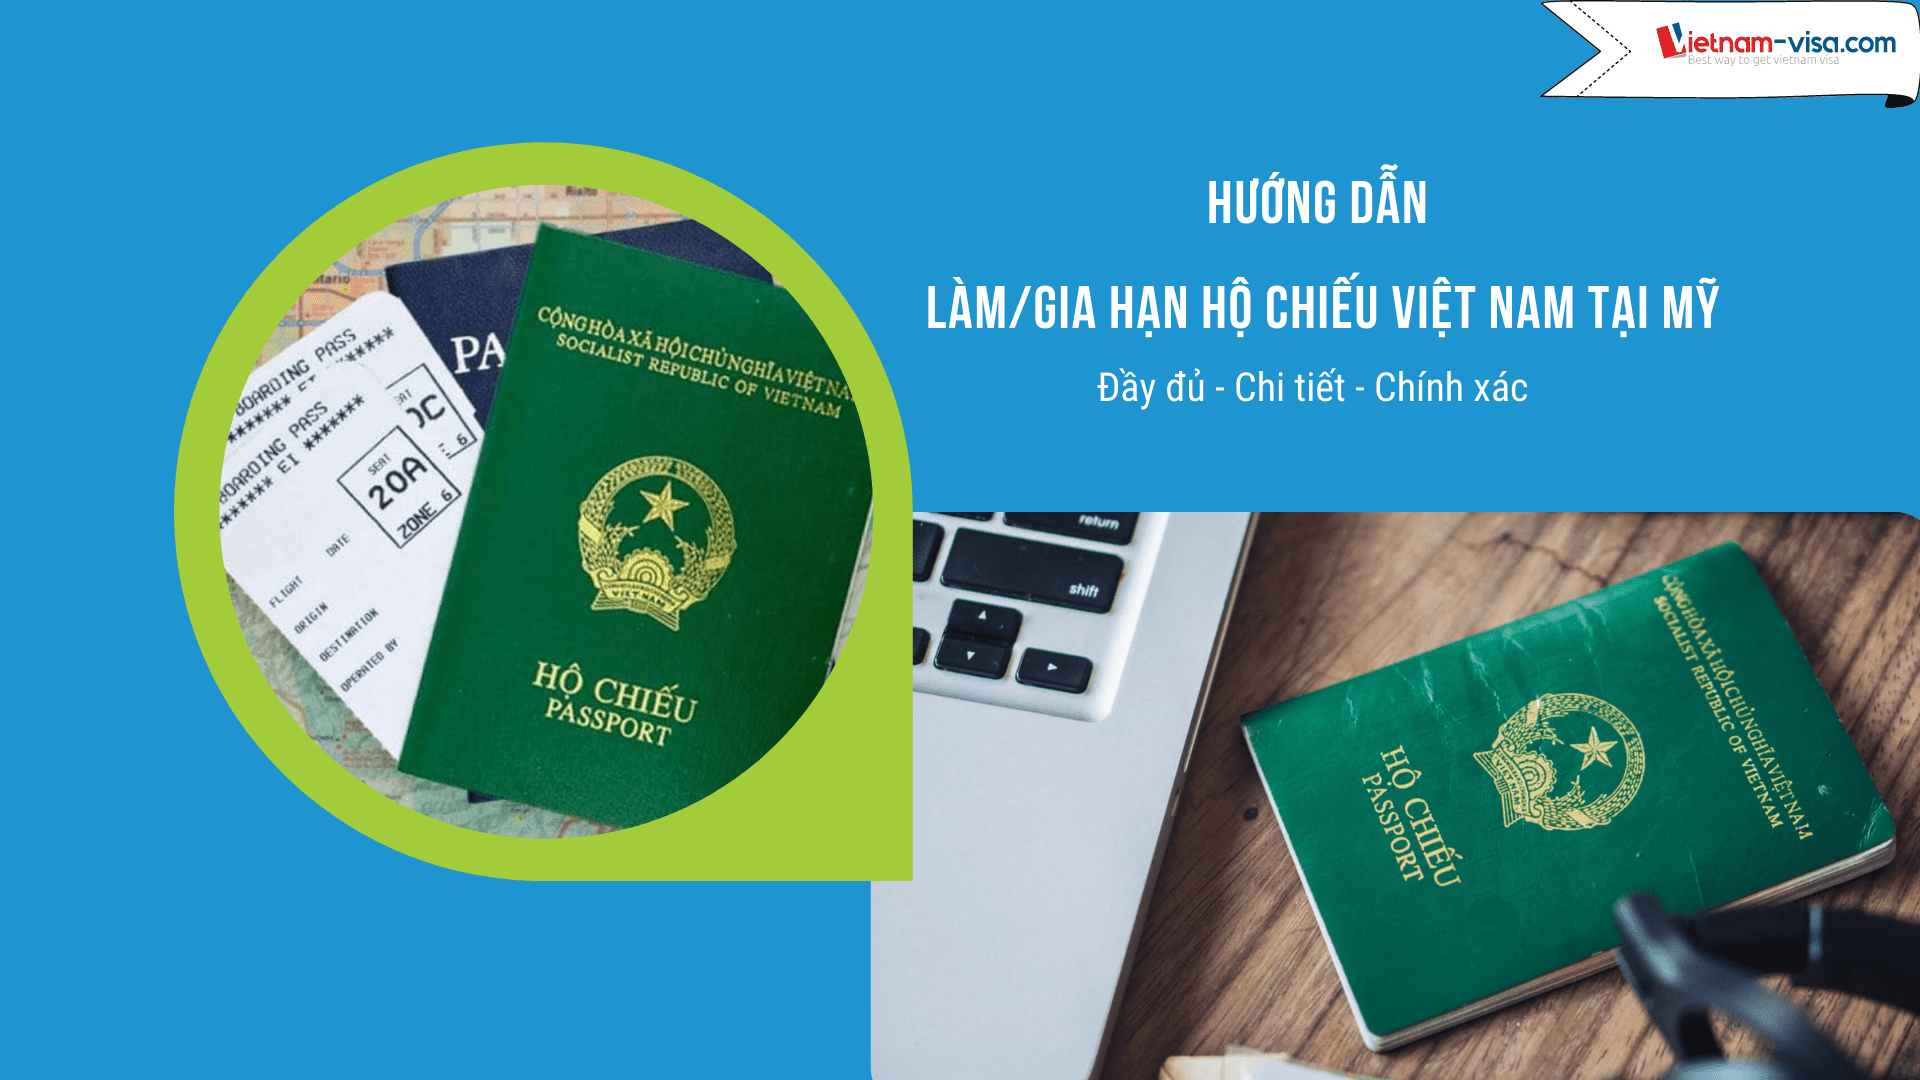 Hướng dẫn làm, gia hạn hộ chiếu Việt Nam tại Mỹ - Vietnam-visa